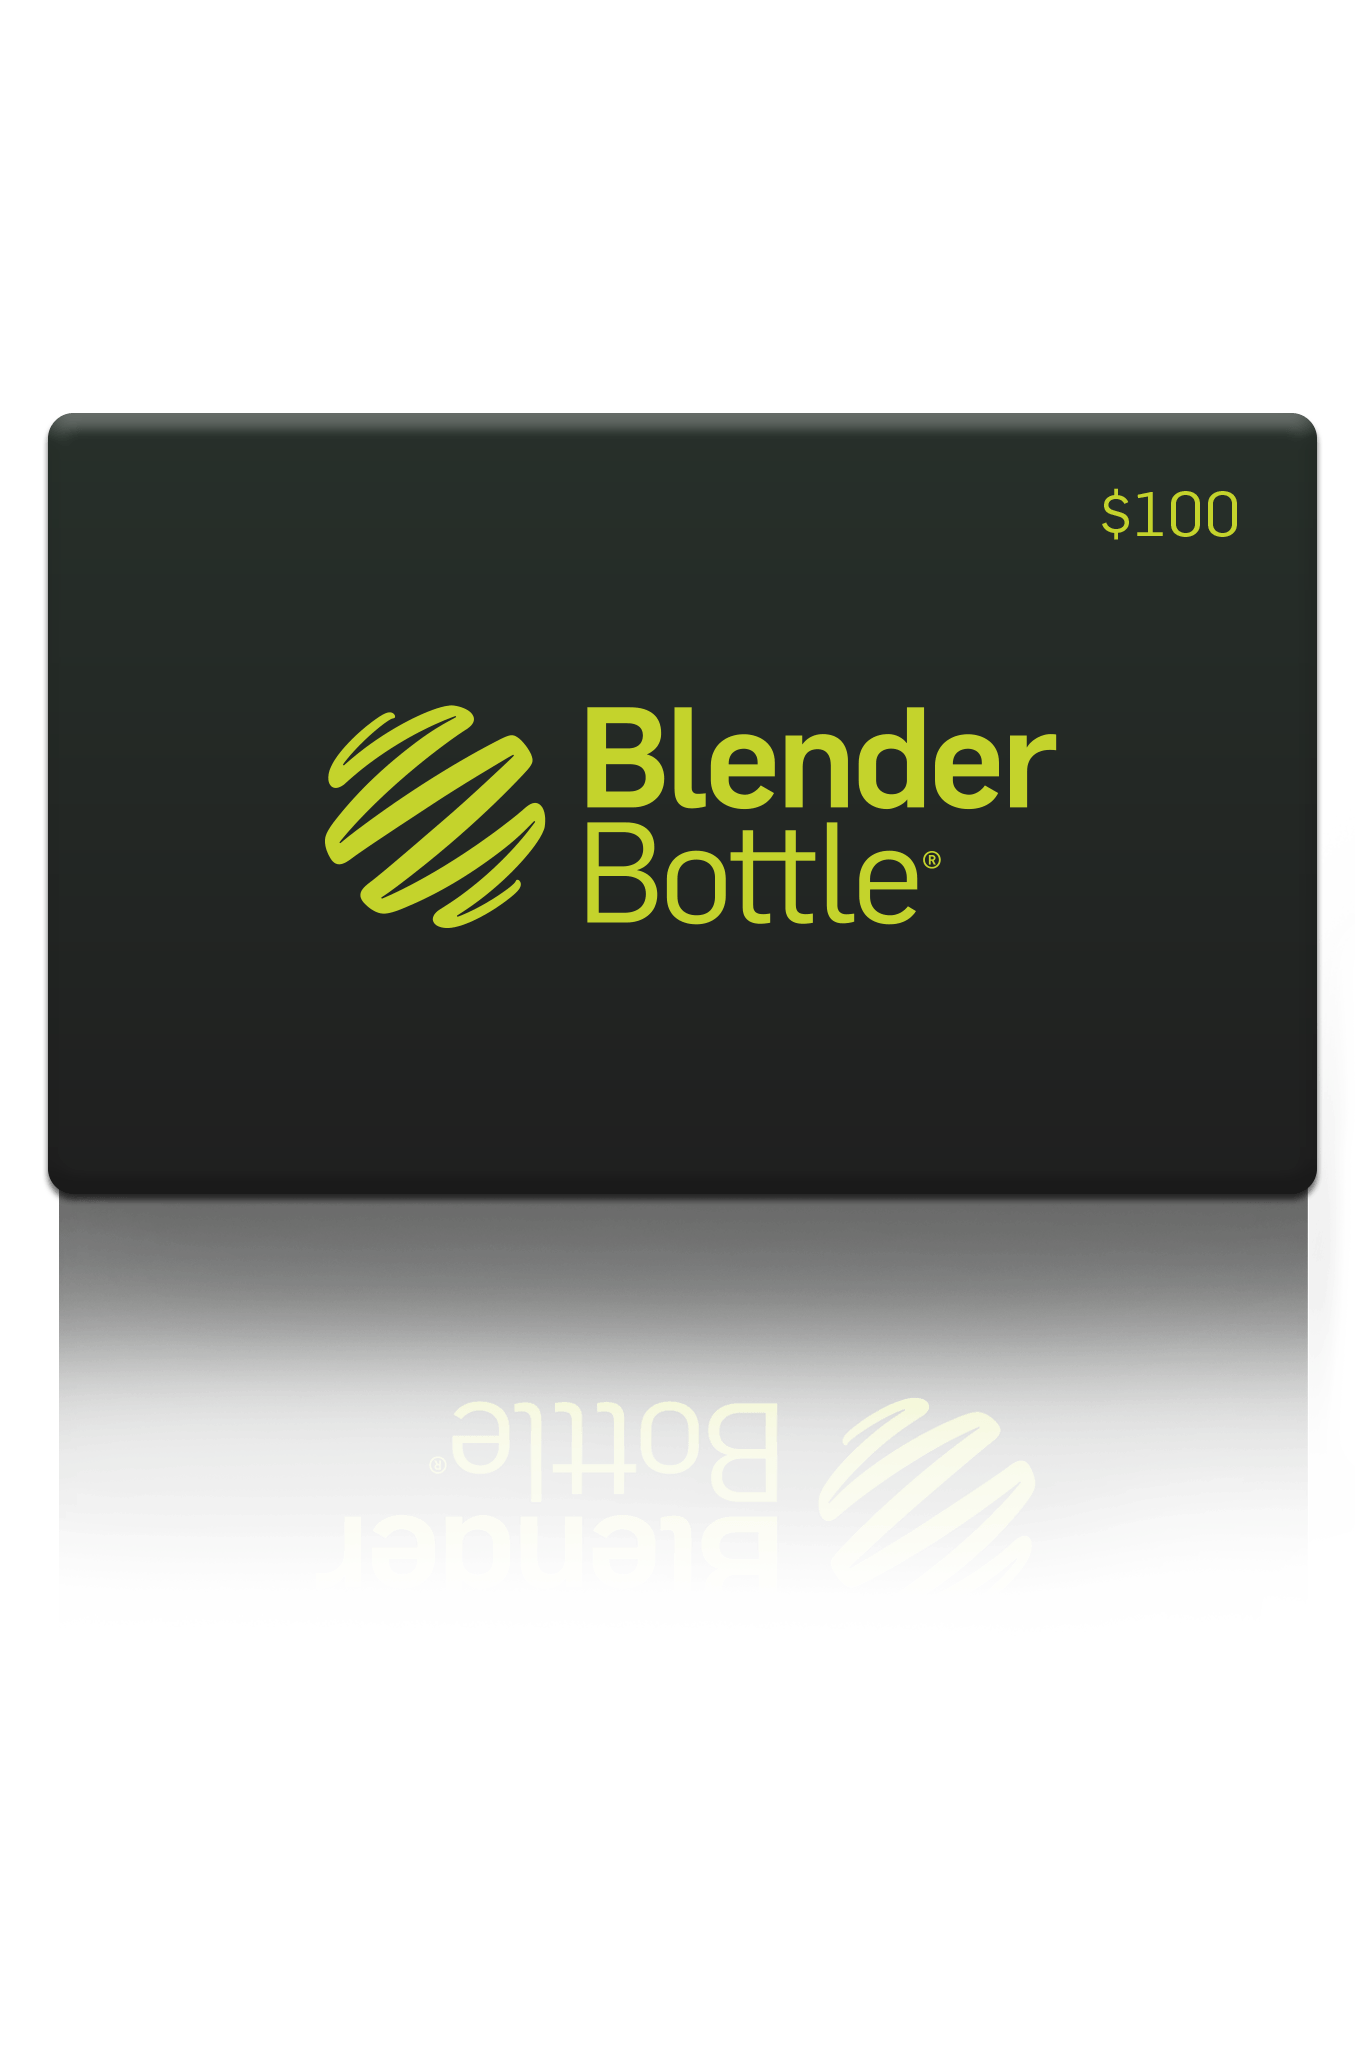 BlenderBottle - BlenderBottle Gift Card - $100.00